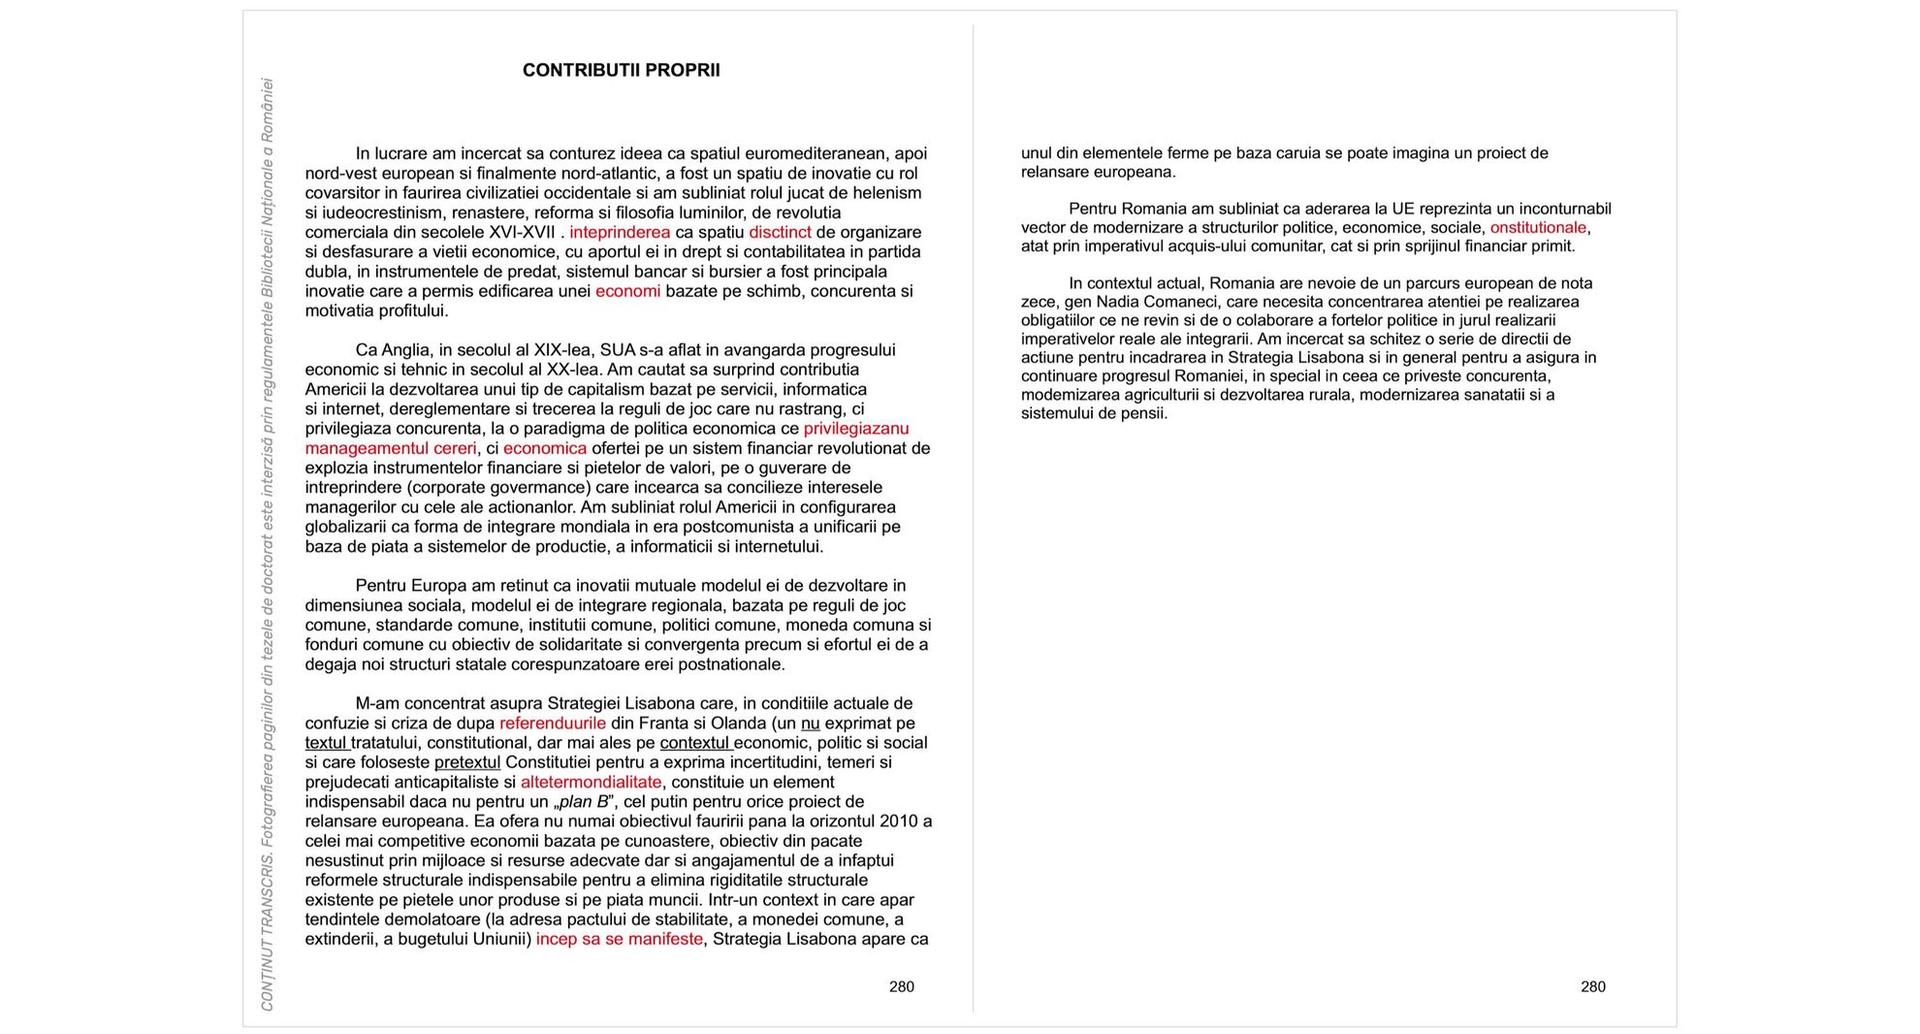 Cele două pagini intitulate “CONTRIBUTII PROPRII” din teza de doctorat a lui Mircea Geoană (pp. 280-281). Regulamentul Bibliotecii Naționale a României nu permite fotografierea paginilor din tezele de doctorat, iar conținutul din imagine este transcris întocmai după original (lipsa diacriticelor și greșelile de scriere, semnalate cu roșu de PressOne, aparțin autorului). 